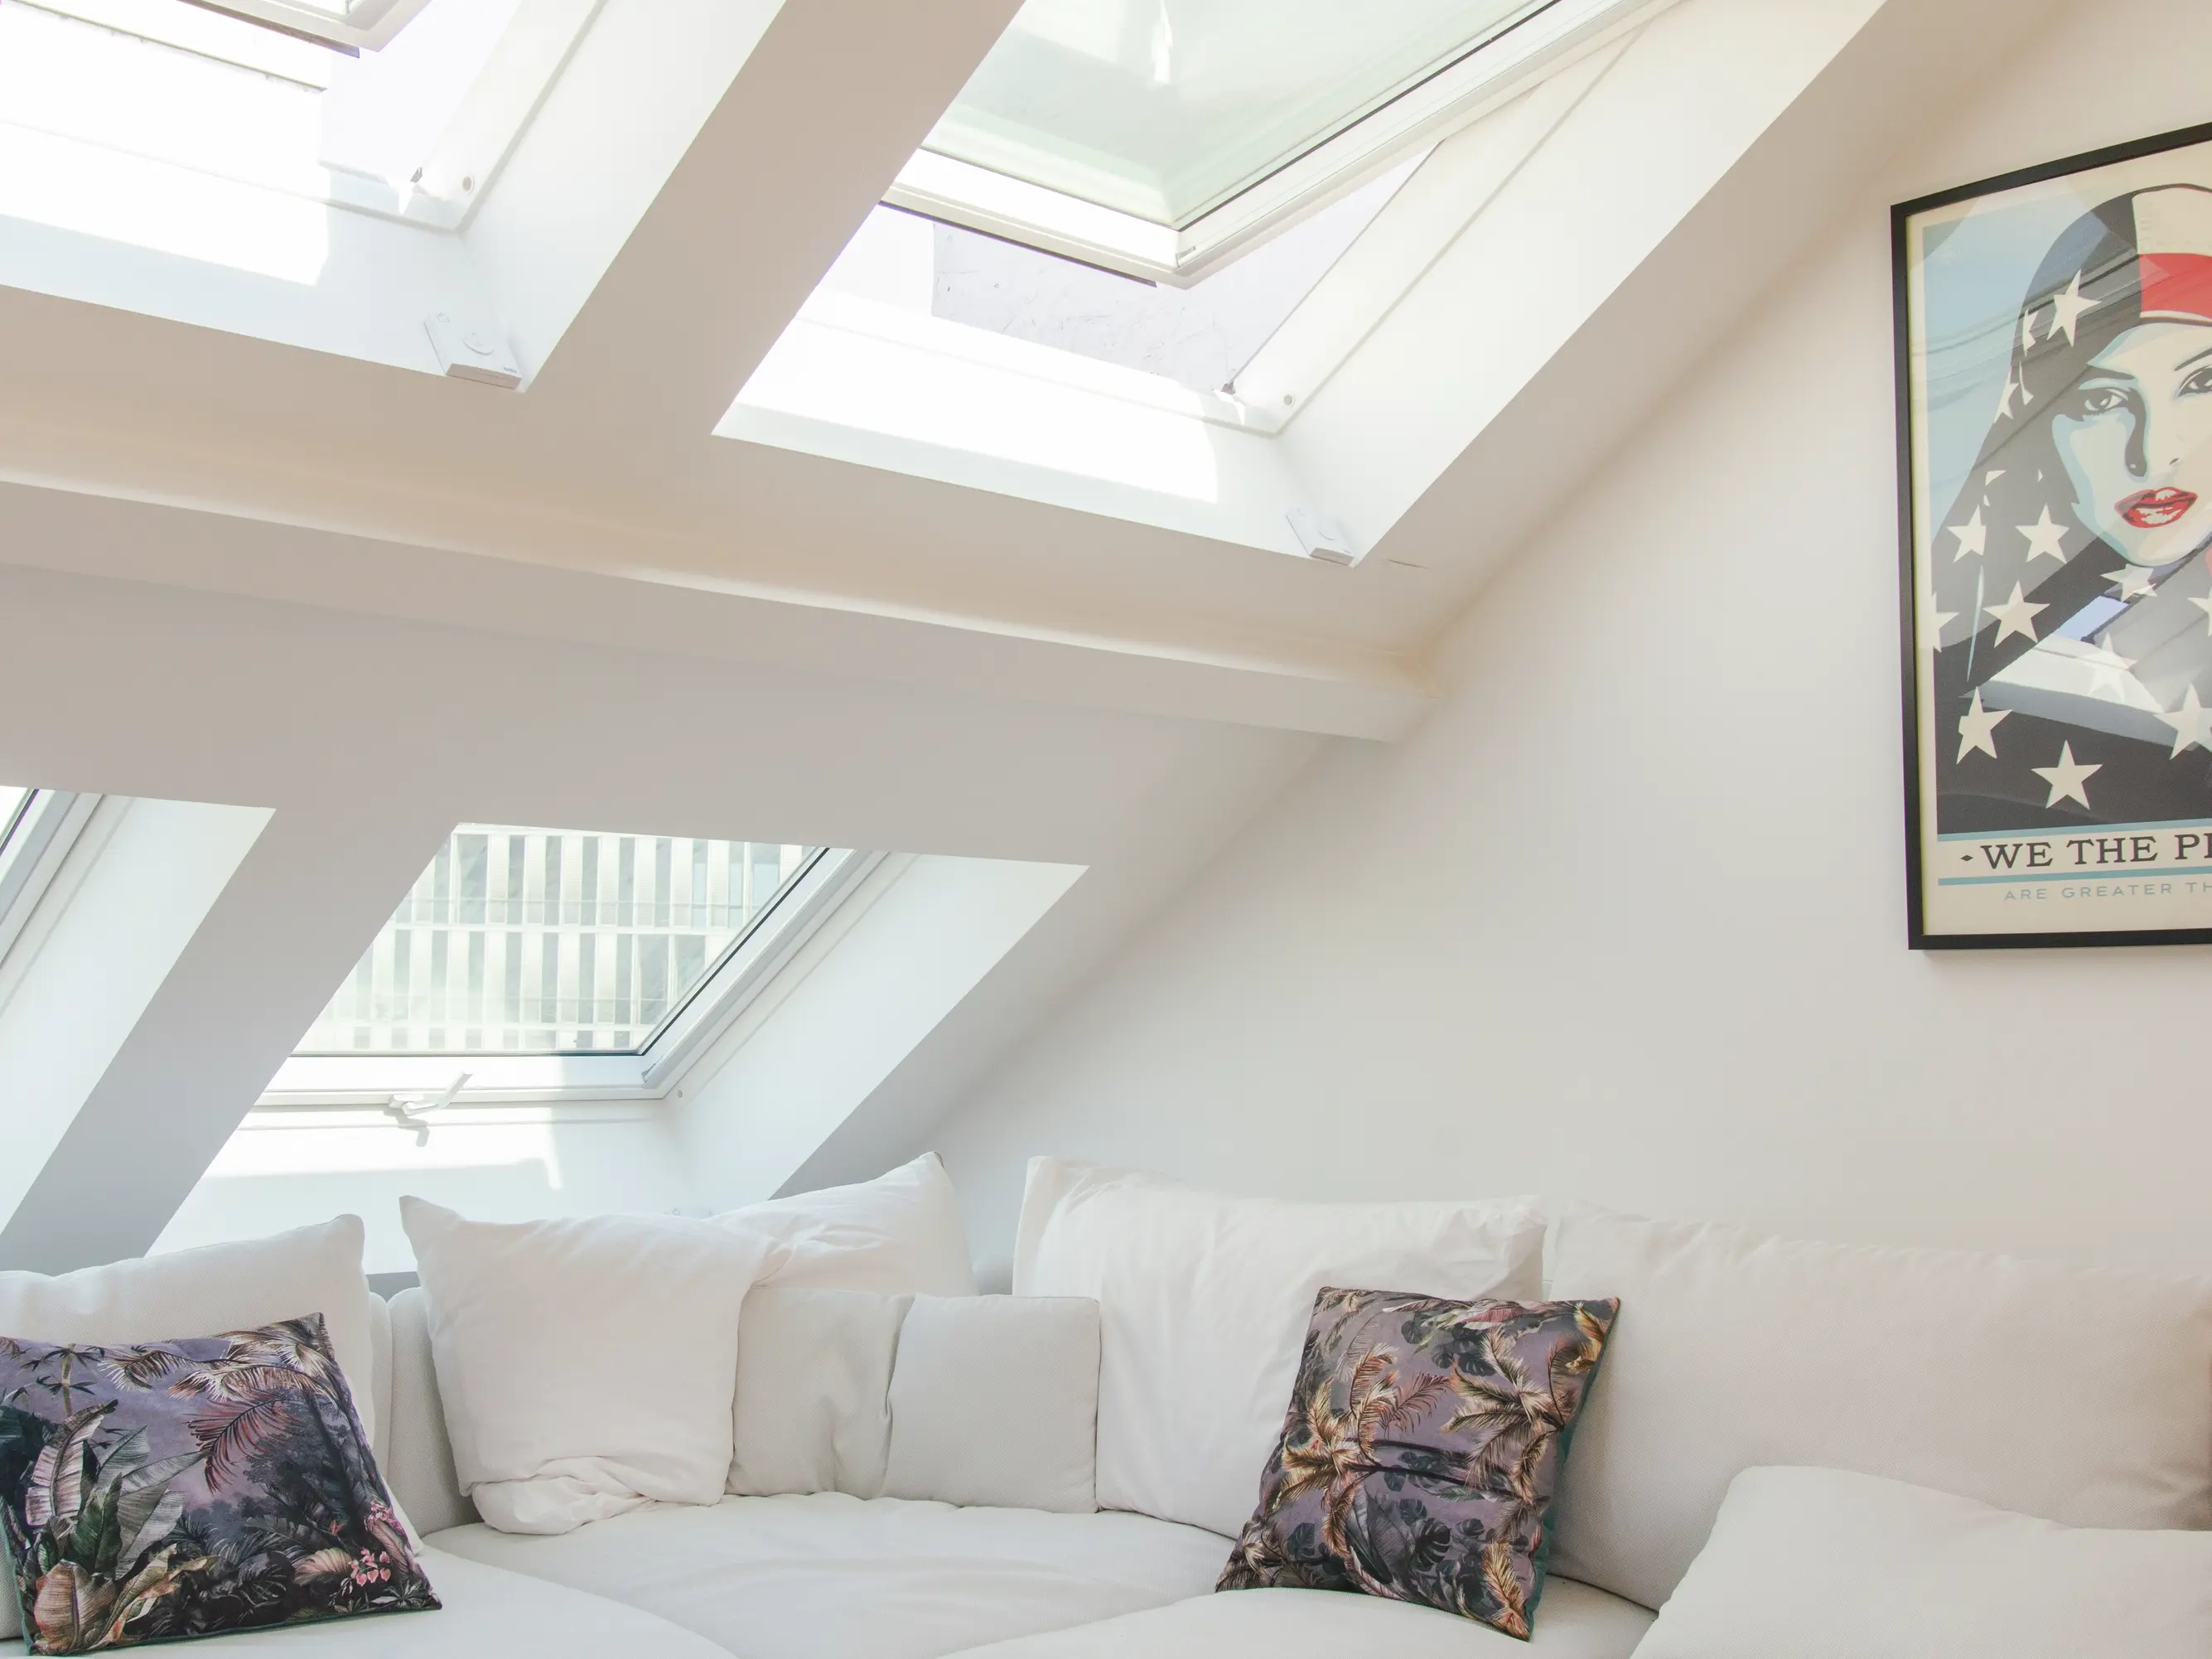 Salon de comble confortable avec lumière naturelle provenant des fenêtres de toit VELUX et un canapé blanc moelleux.